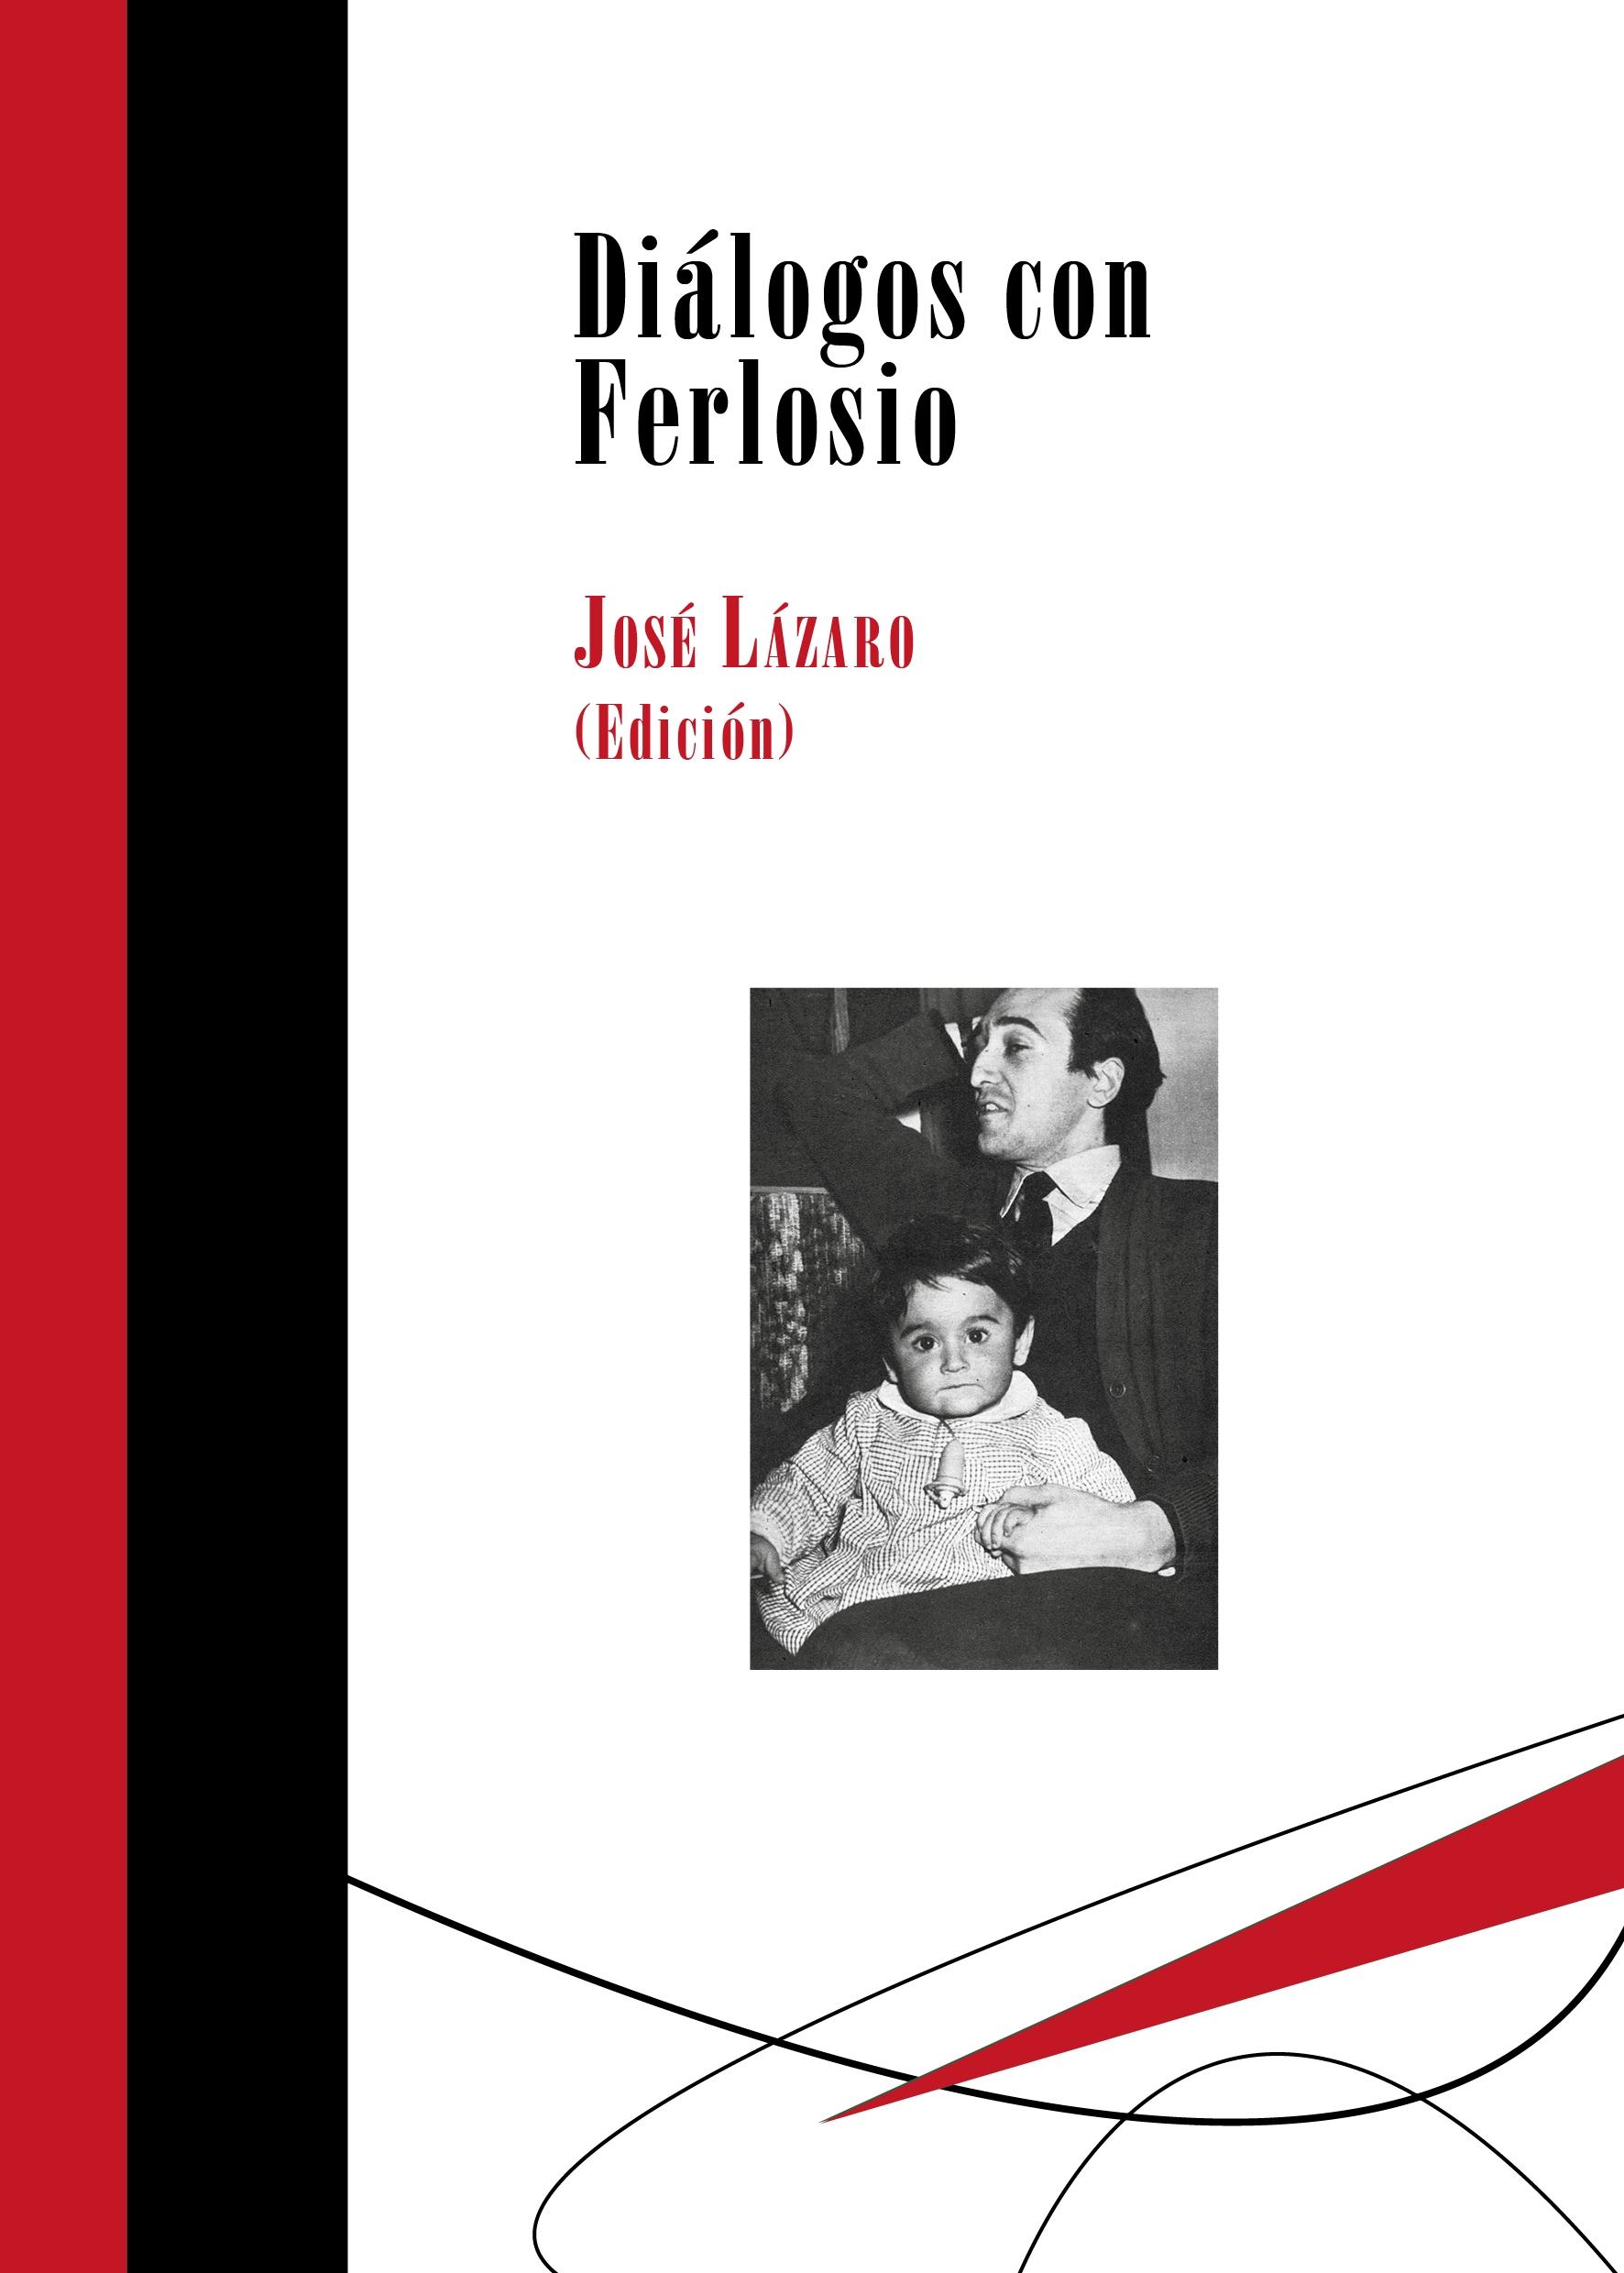 Diálogos con Ferlosio "Edición de José Lázaro"